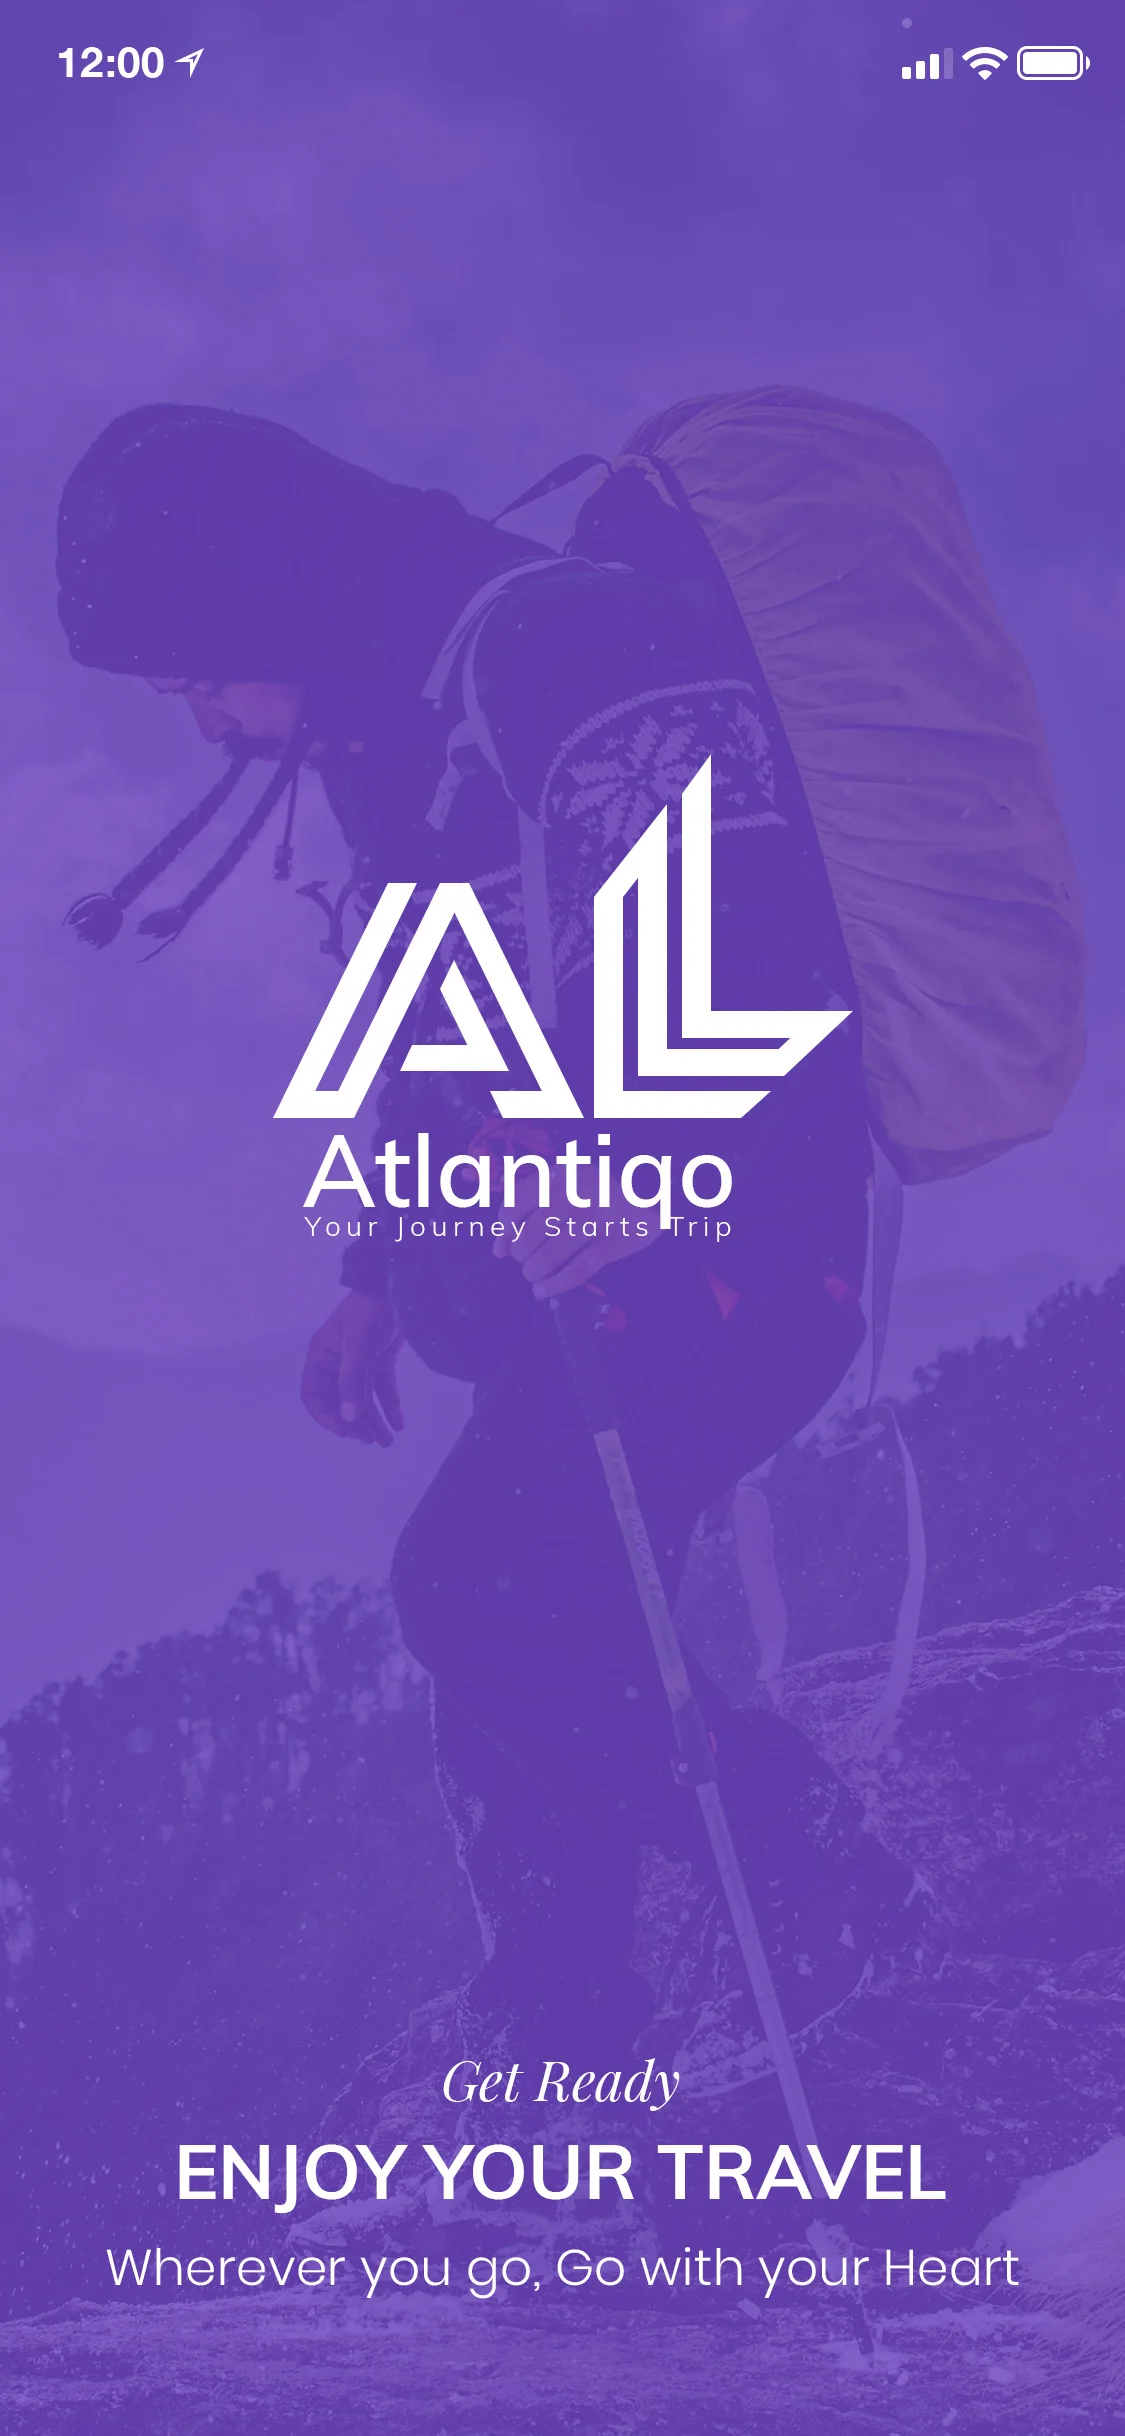 Atlantigo-Travel UI Kit 旅行用户界面套件-UI/UX、ui套件、主页、介绍、列表、博客、卡片式、应用、引导页、注册、登录页、着陆页、社交、网站-到位啦UI